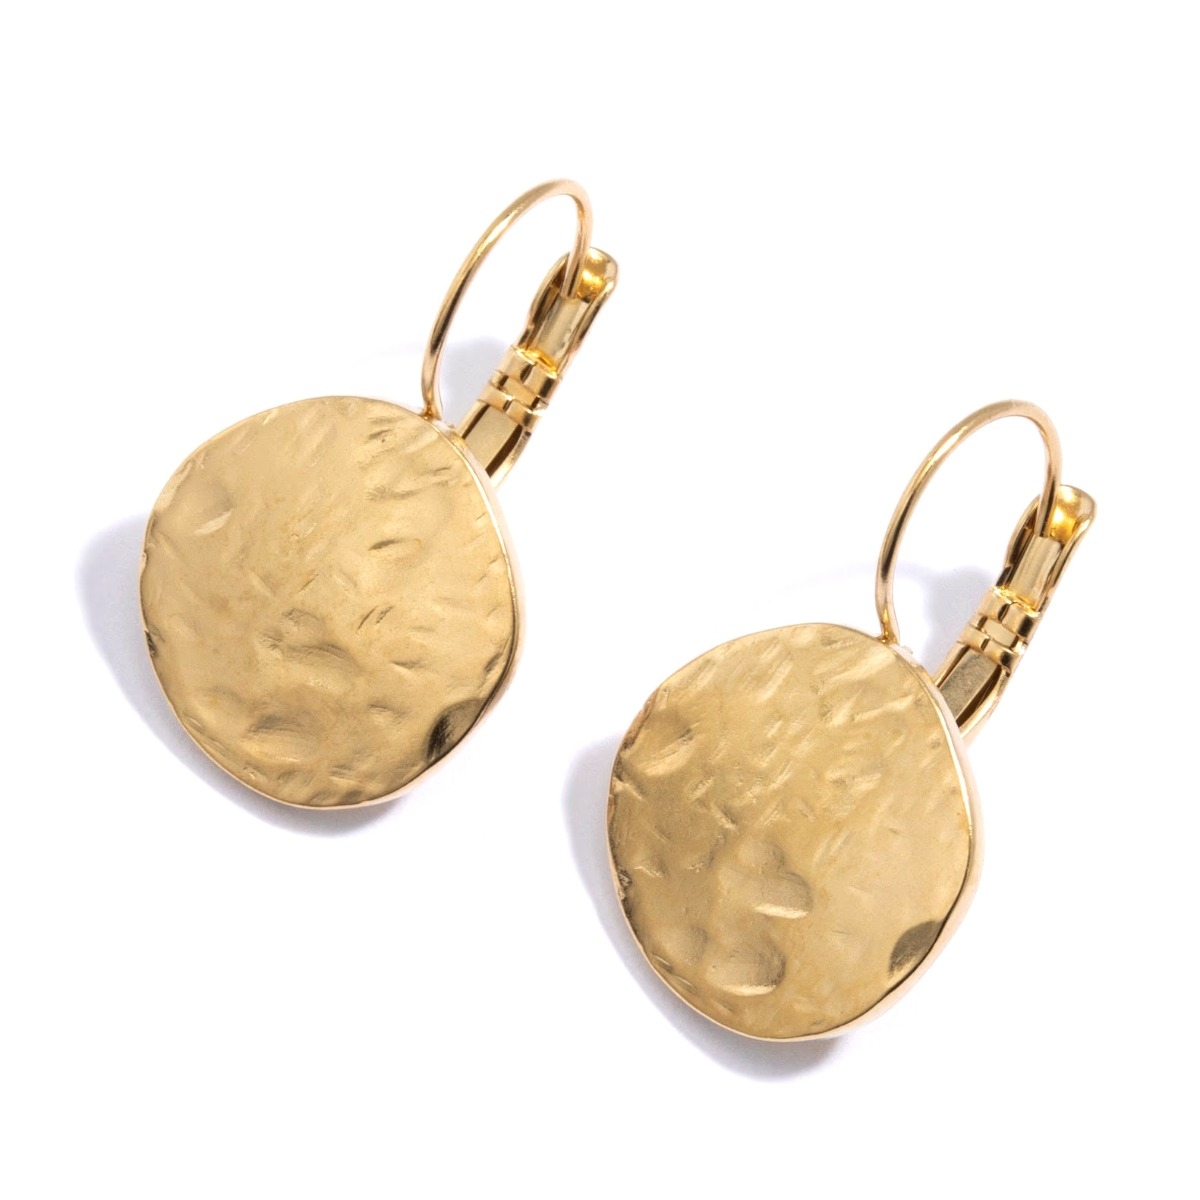 Aggregate 146+ 24k gold earrings uk